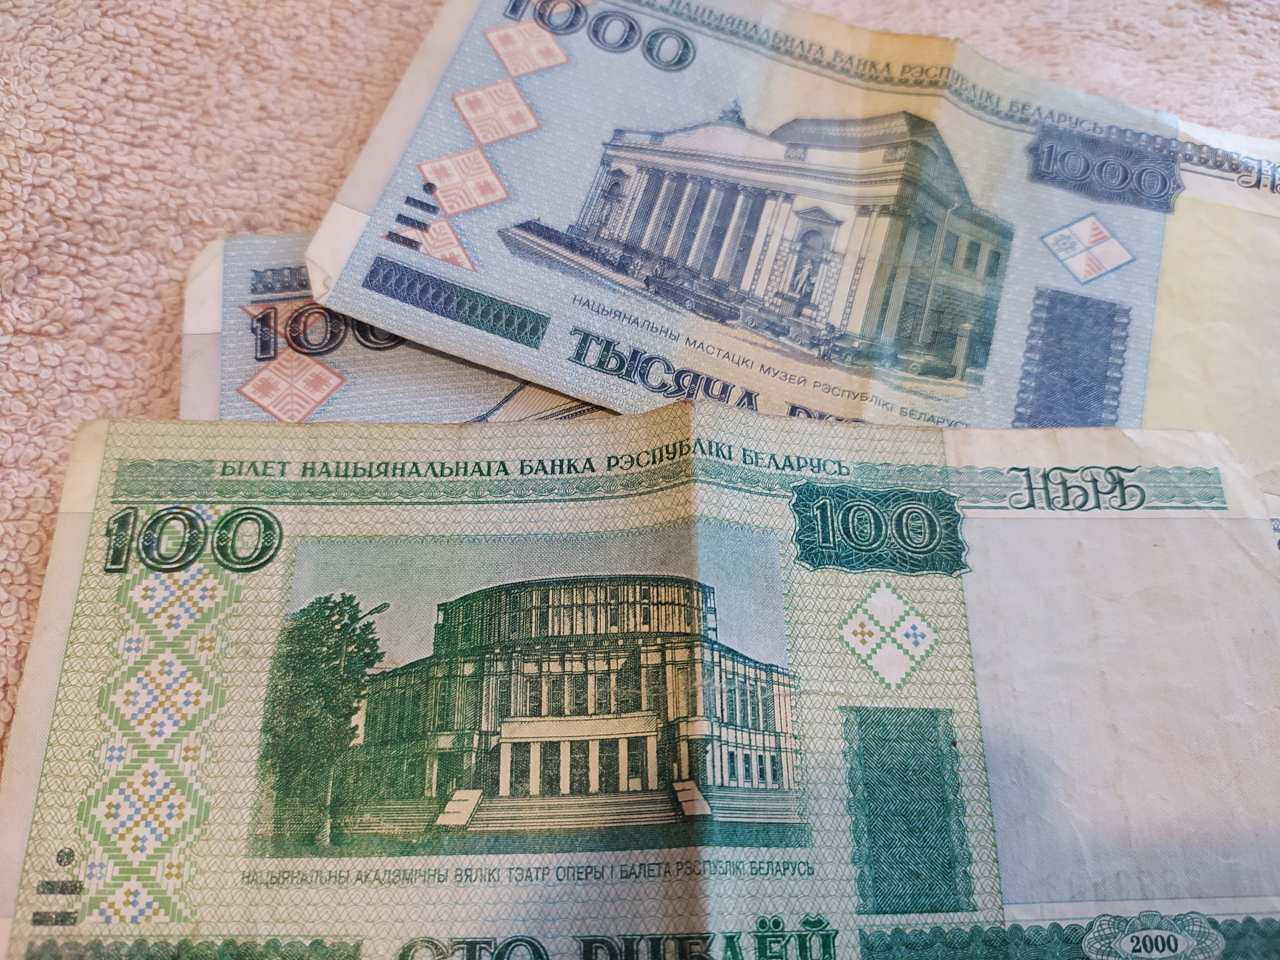 3 доллара в белорусских. Белорусский рубль к доллару. Белорусский рубль фото. Деньги Белоруссии фото. Фото изъятых белорусских денег.